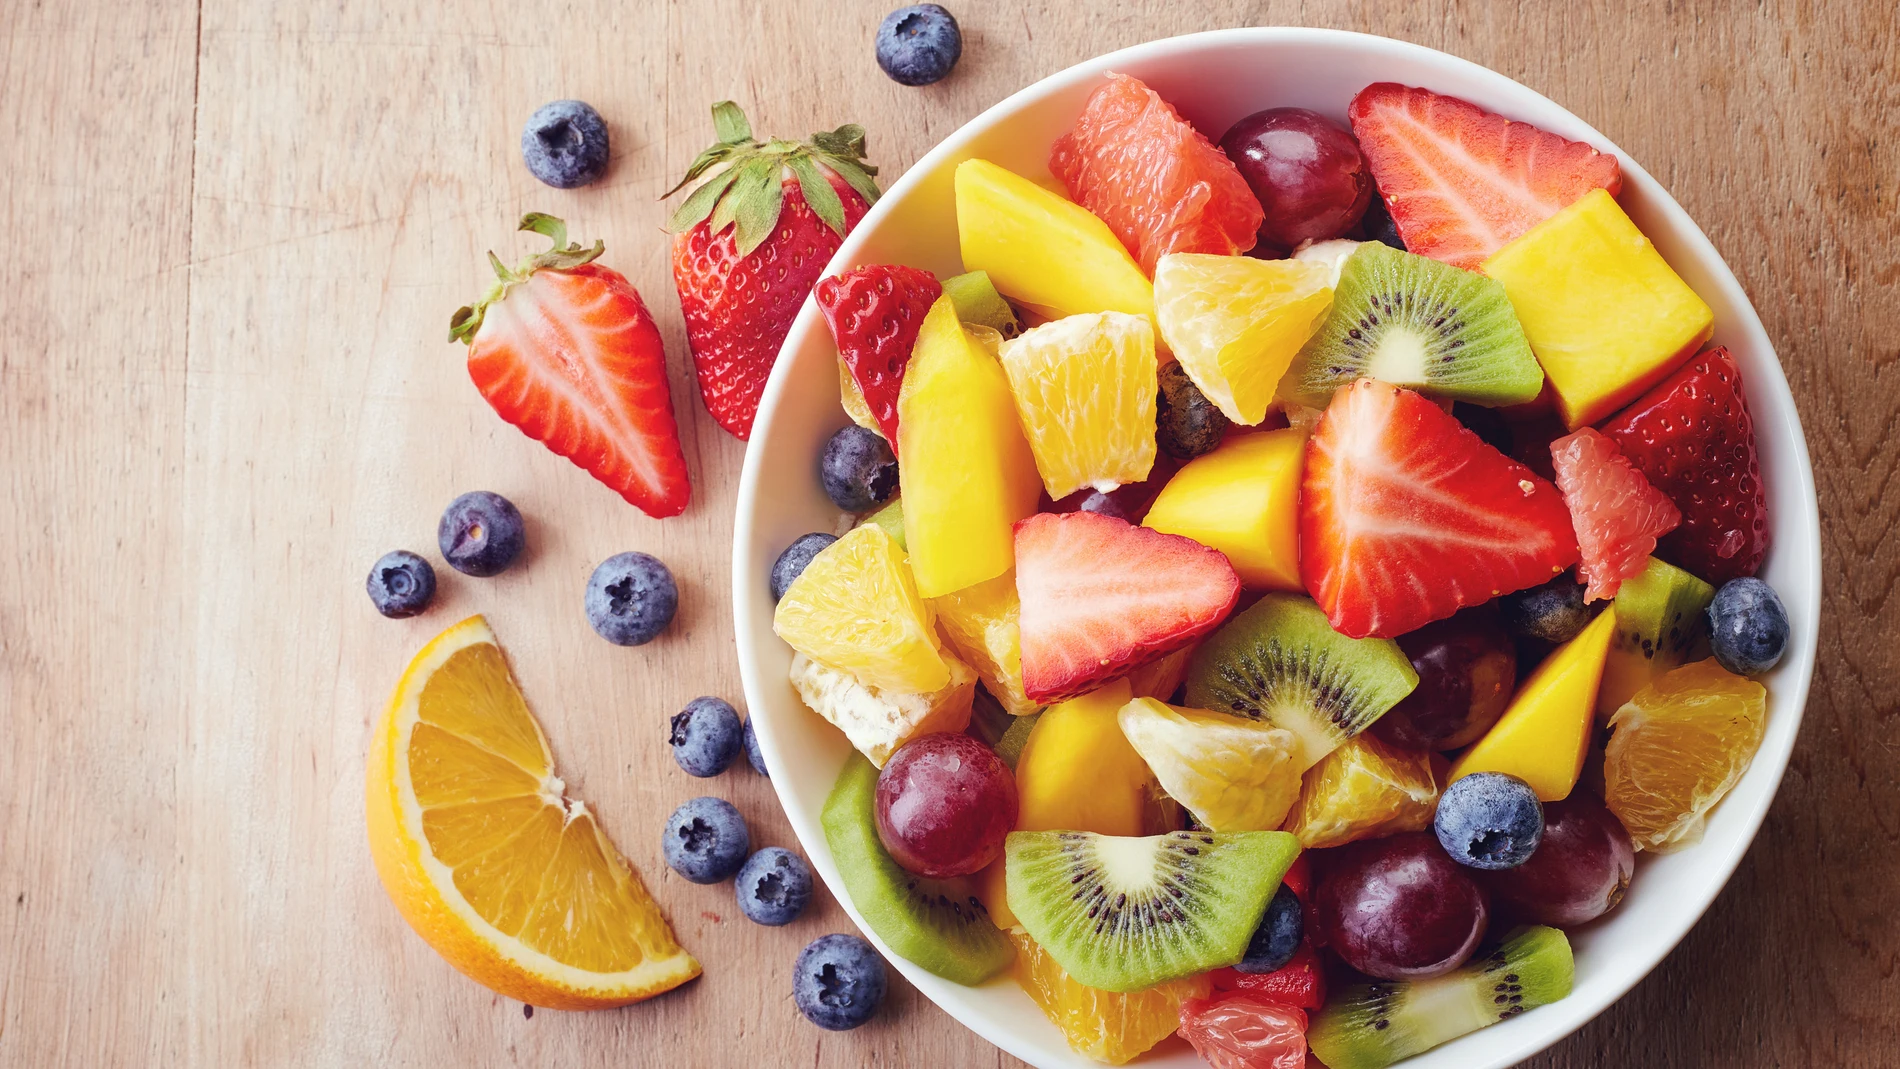 Las frutas y las verduras contienen una gran cantidad de beneficios para la salud gracias a sus vitaminas, minerales o fibra